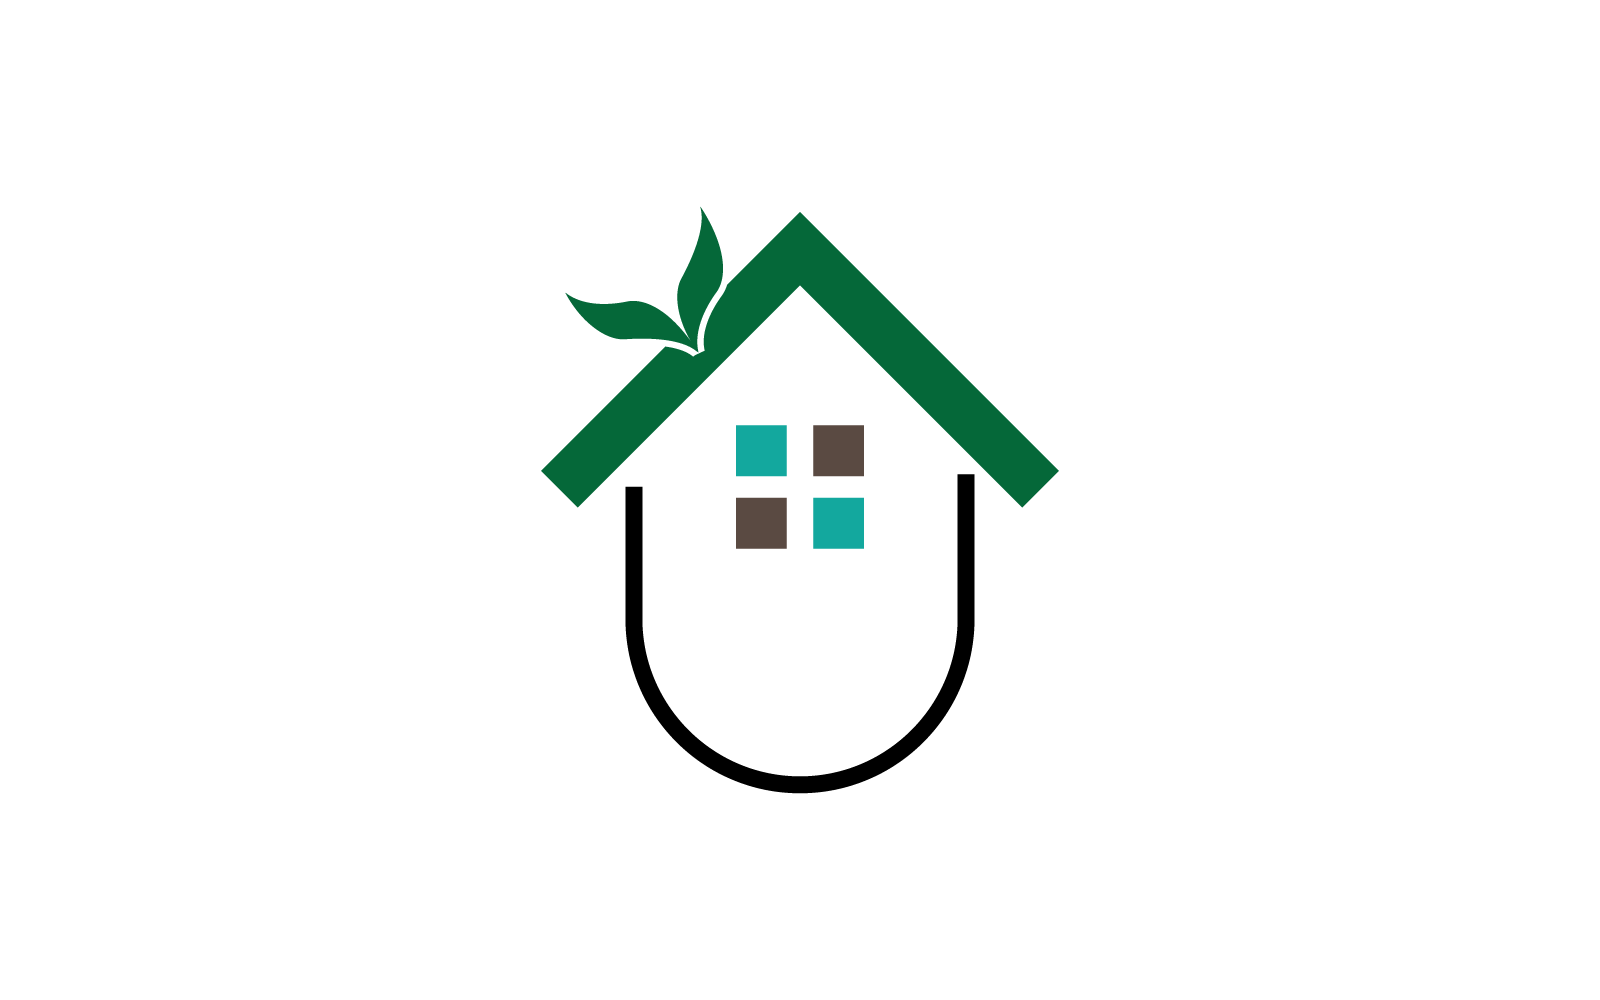 Green House logo design vector template